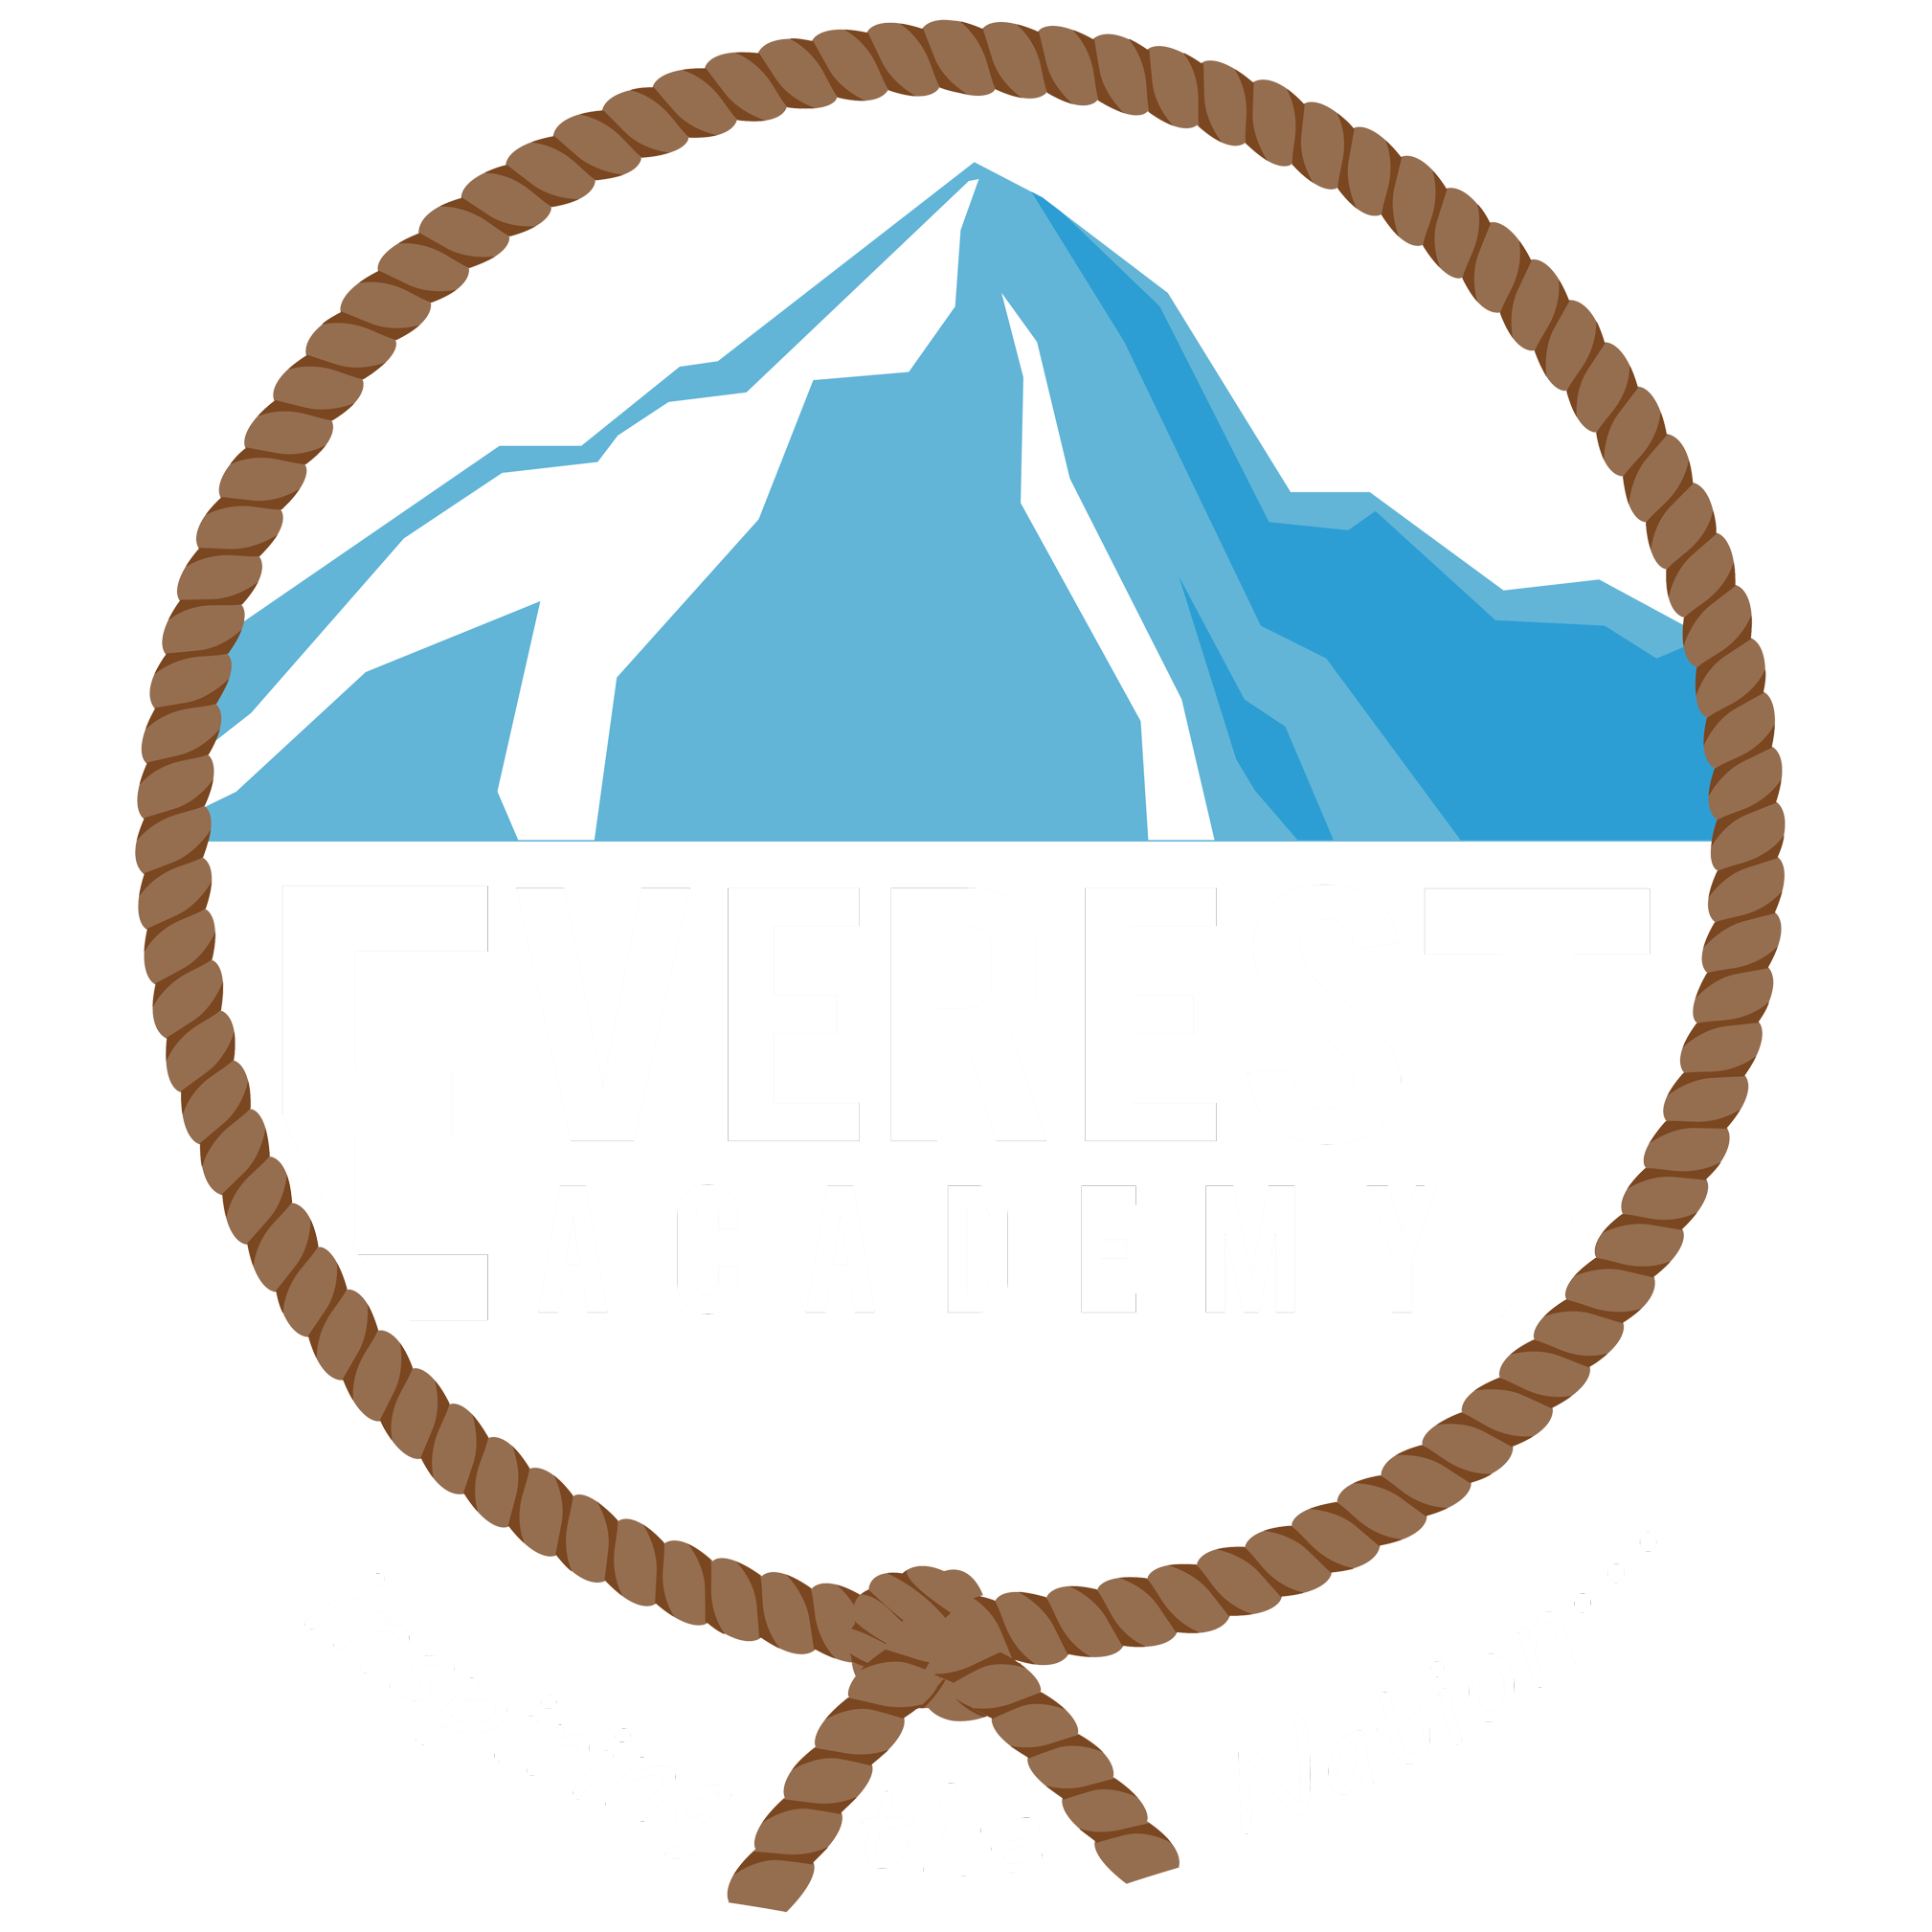 Bahis Şirketi Online Spor Bahisleri Bahis Şirketi 1xbet Co - Everest Academy